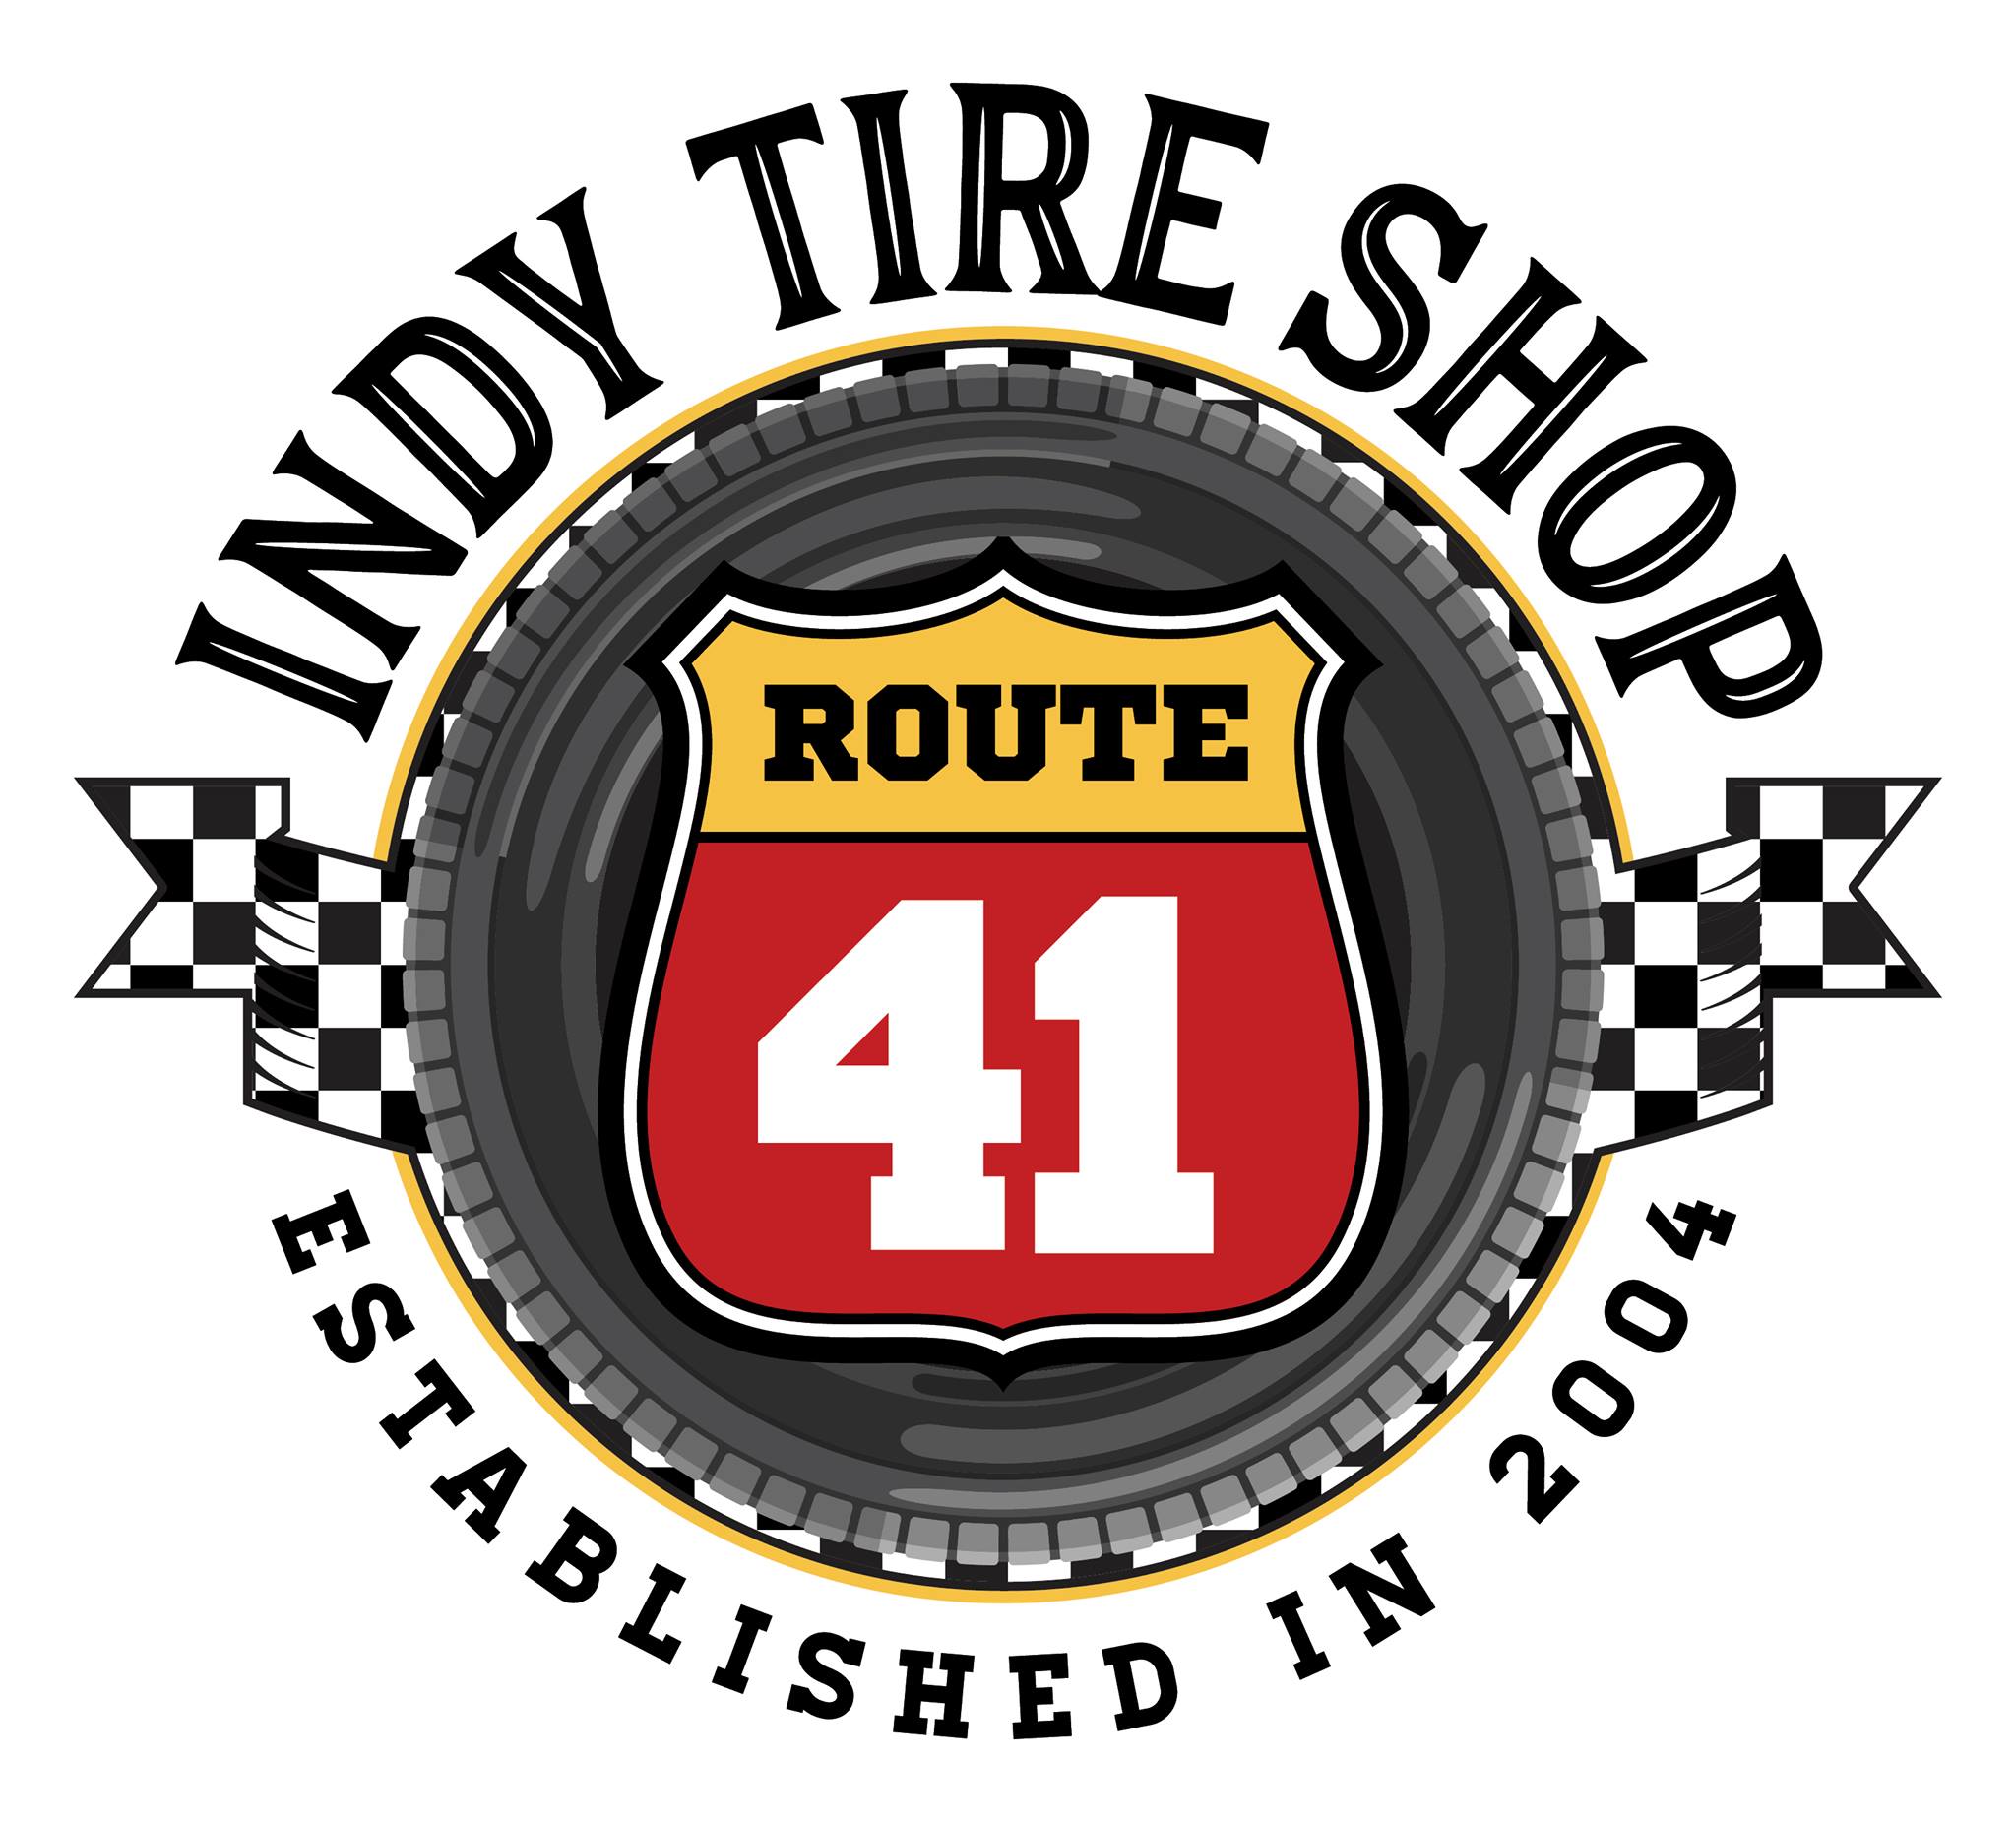 Indy Tire Shop